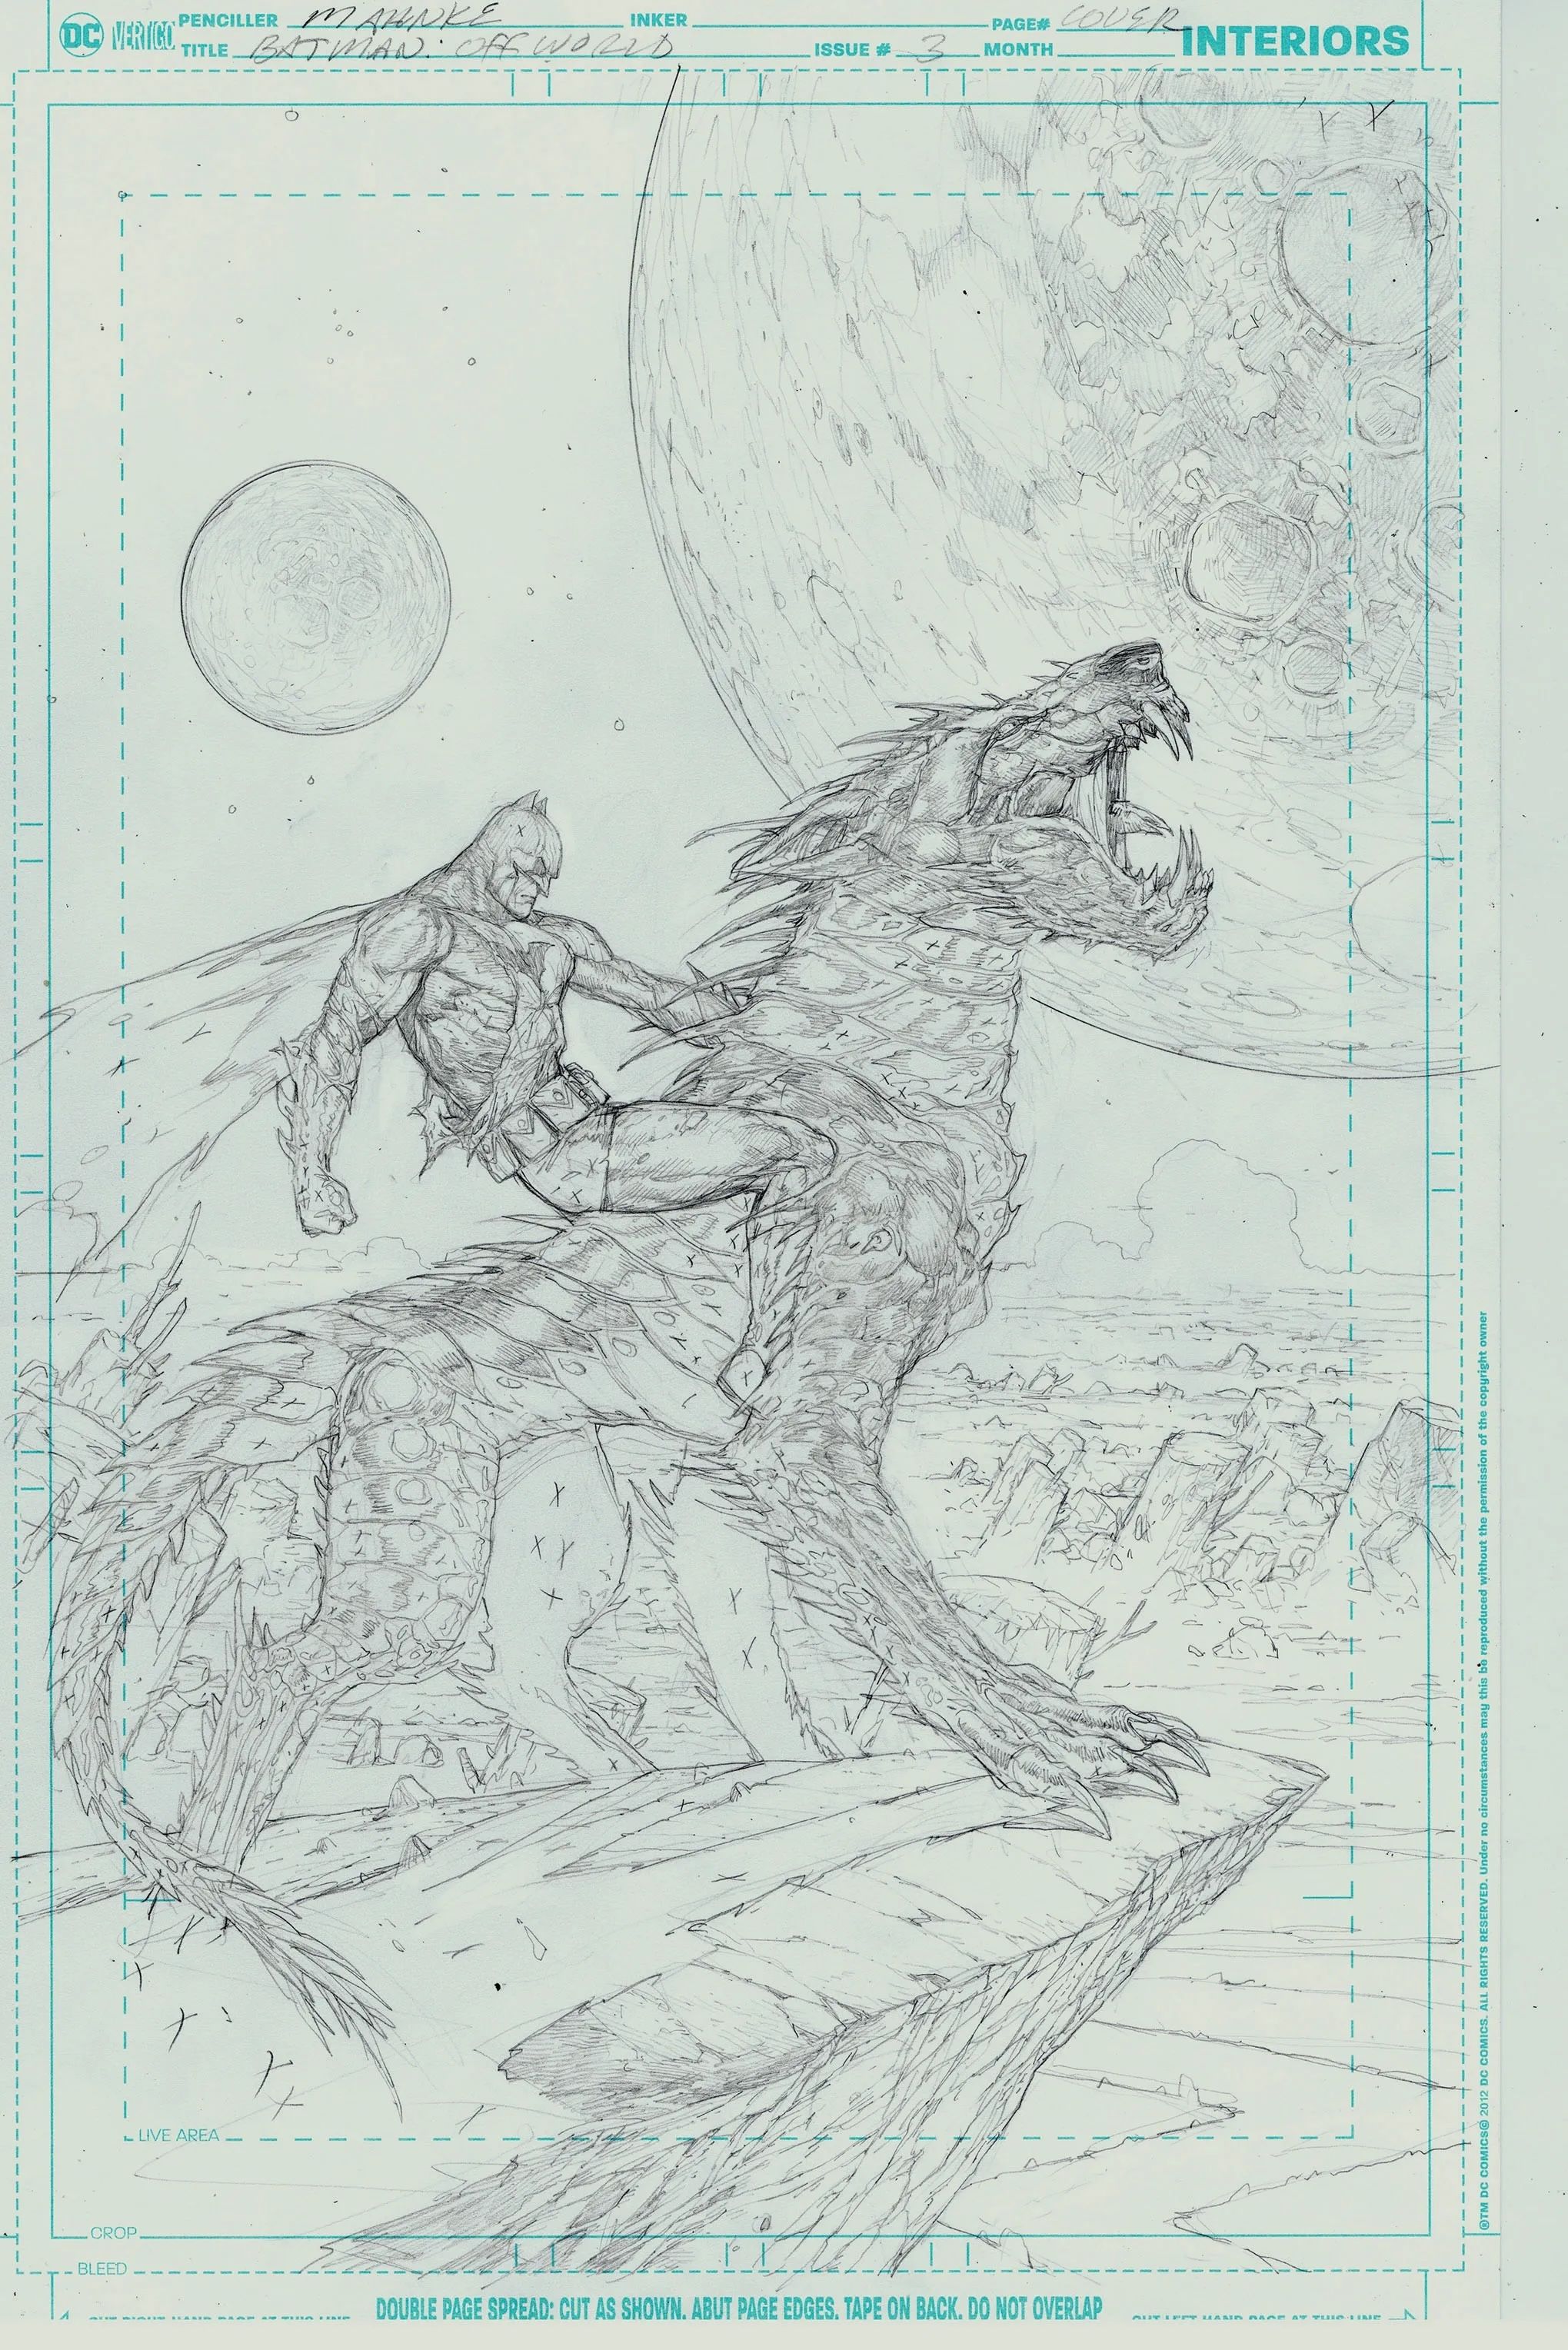 Lápices de la portada de un cómic.  Batman monta una bestia alienígena mientras se enfrenta a una luna alienígena.